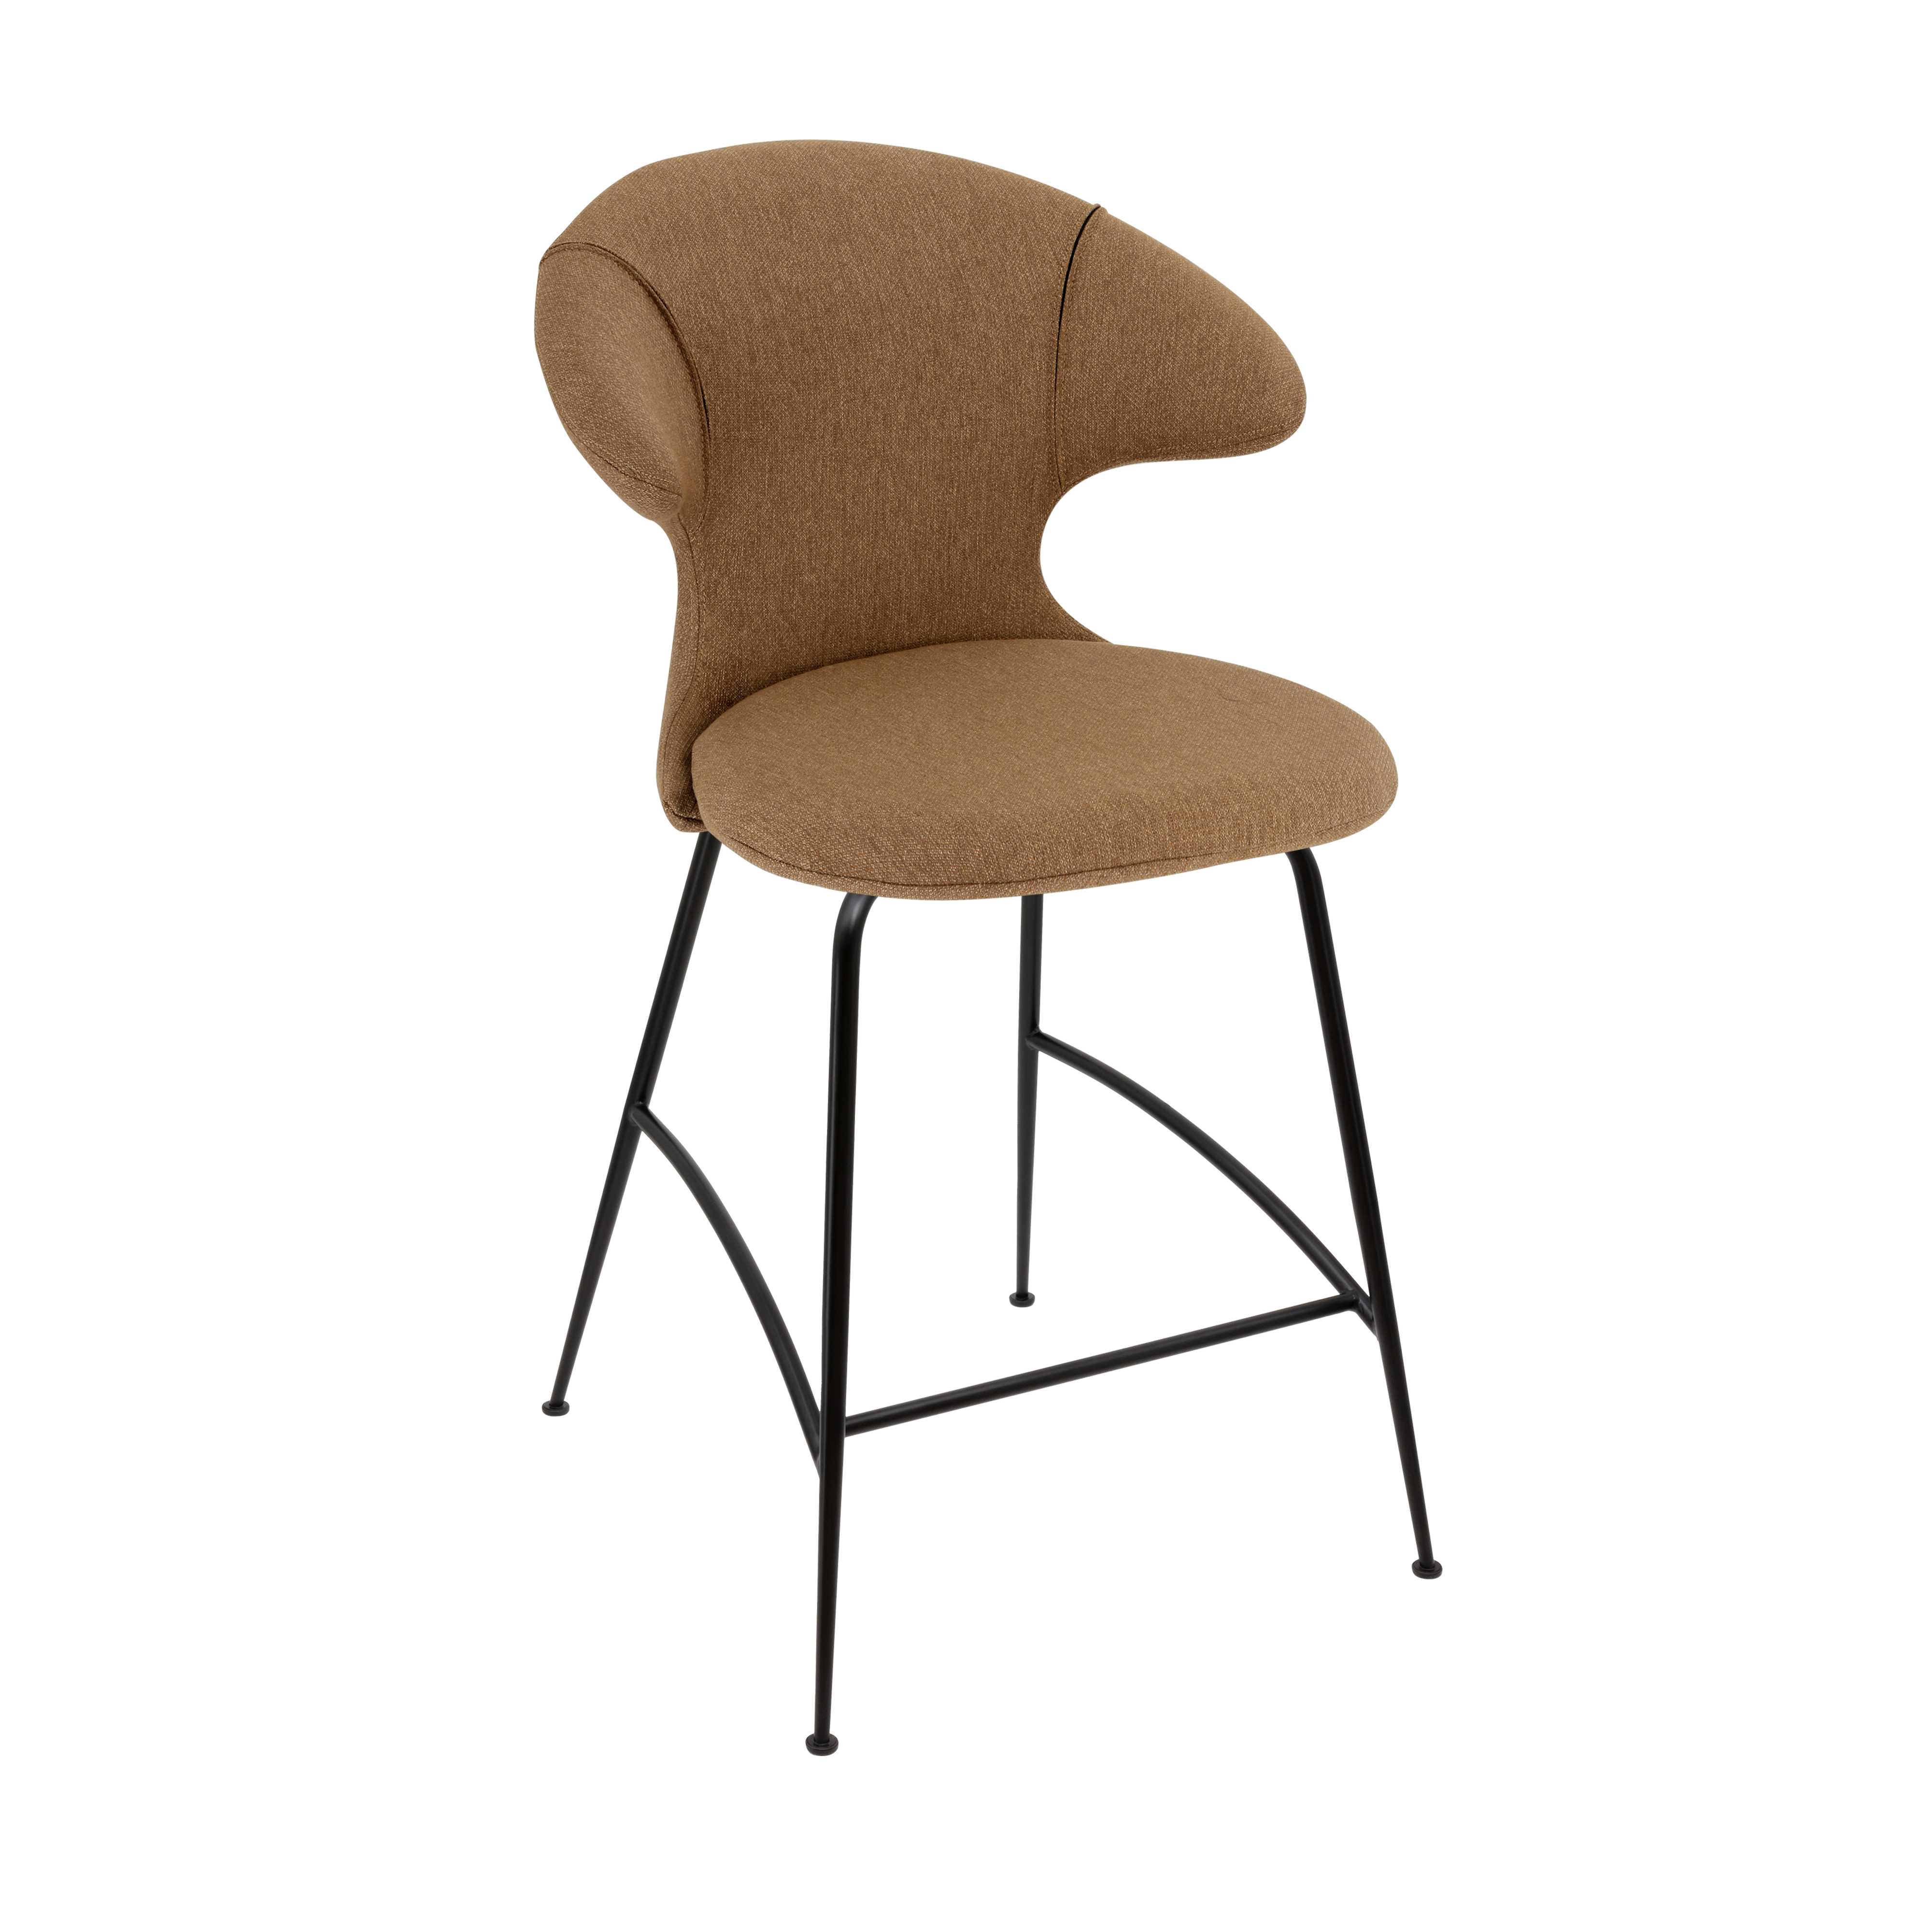 Time Flies Counter Stuhl in Sugar Brown präsentiert im Onlineshop von KAQTU Design AG. Barstuhl mit Armlehne ist von Umage